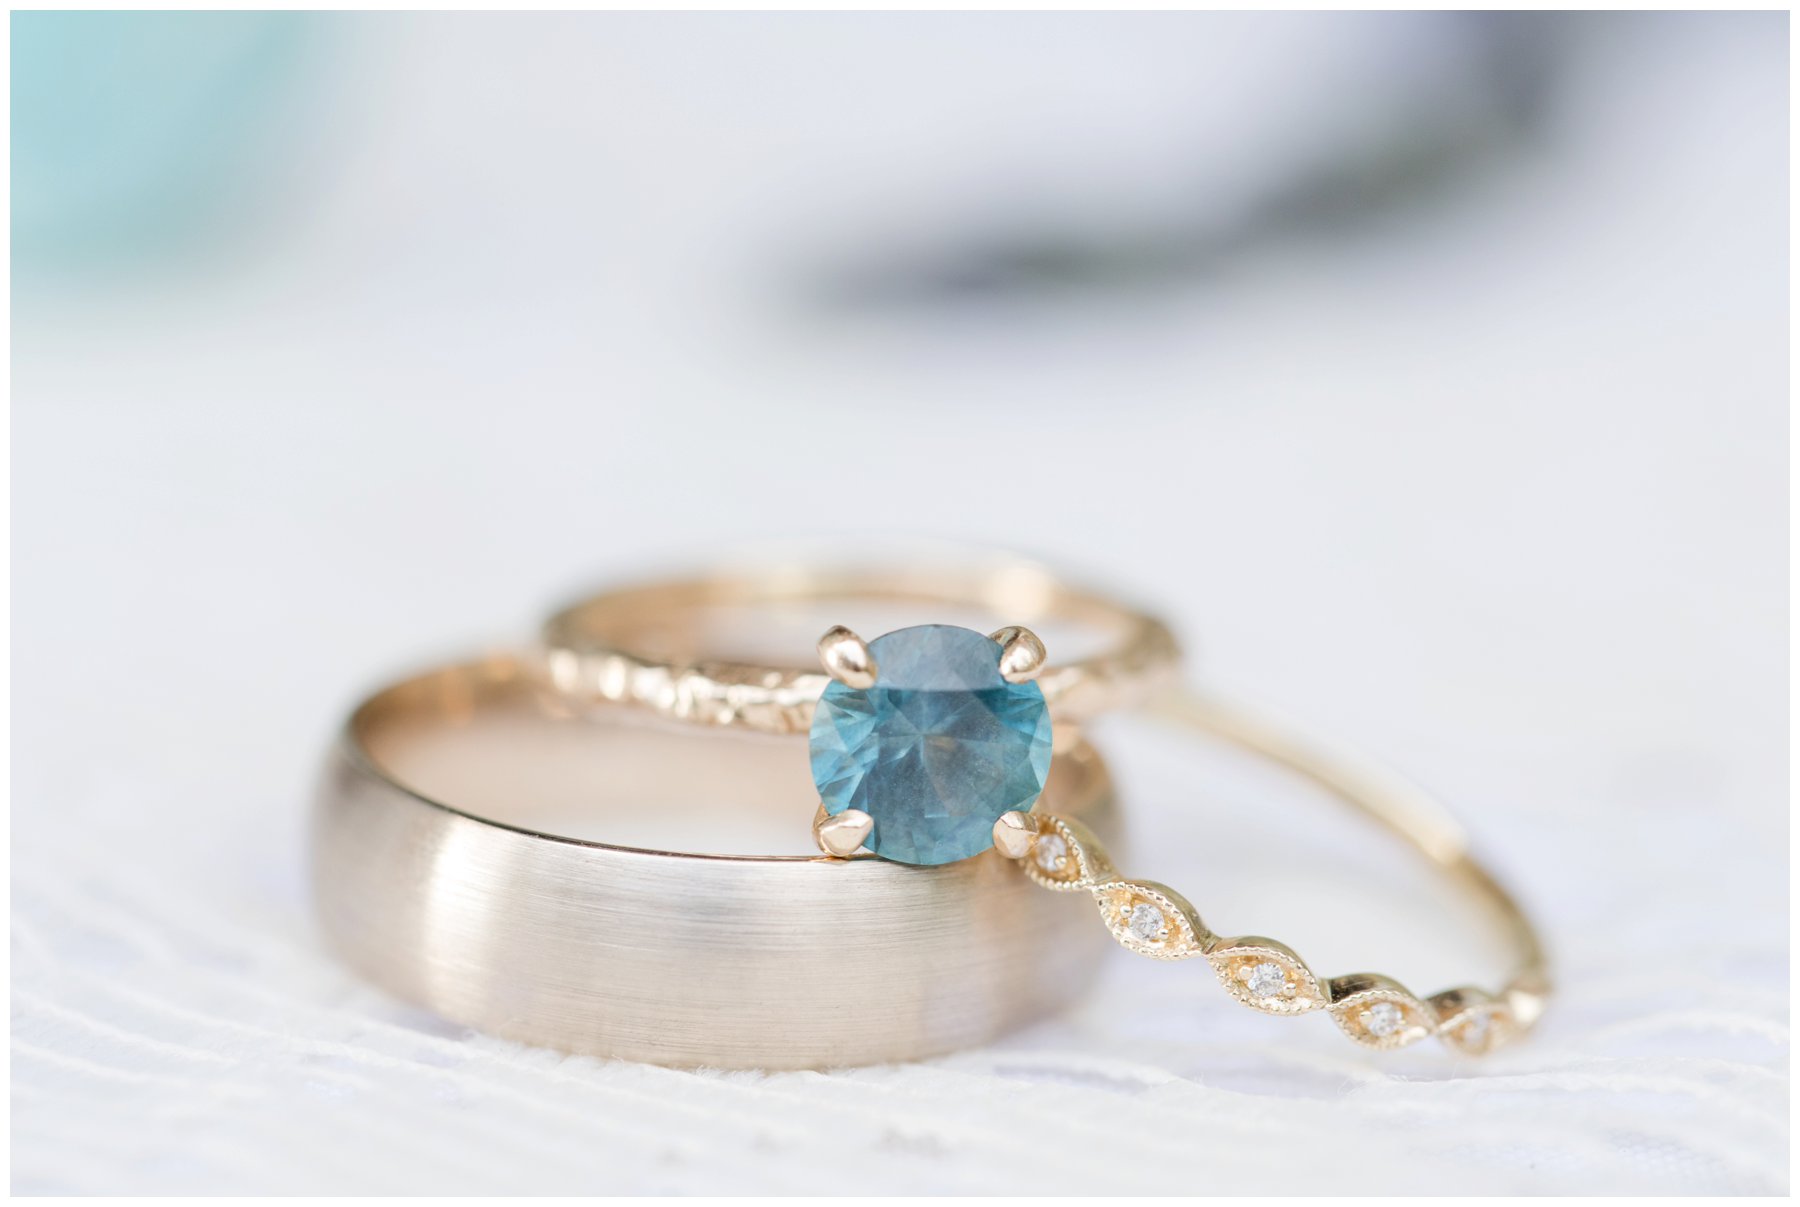 Turquoise engagement ring - The Barnett Company, Ottawa Wedding Photographers